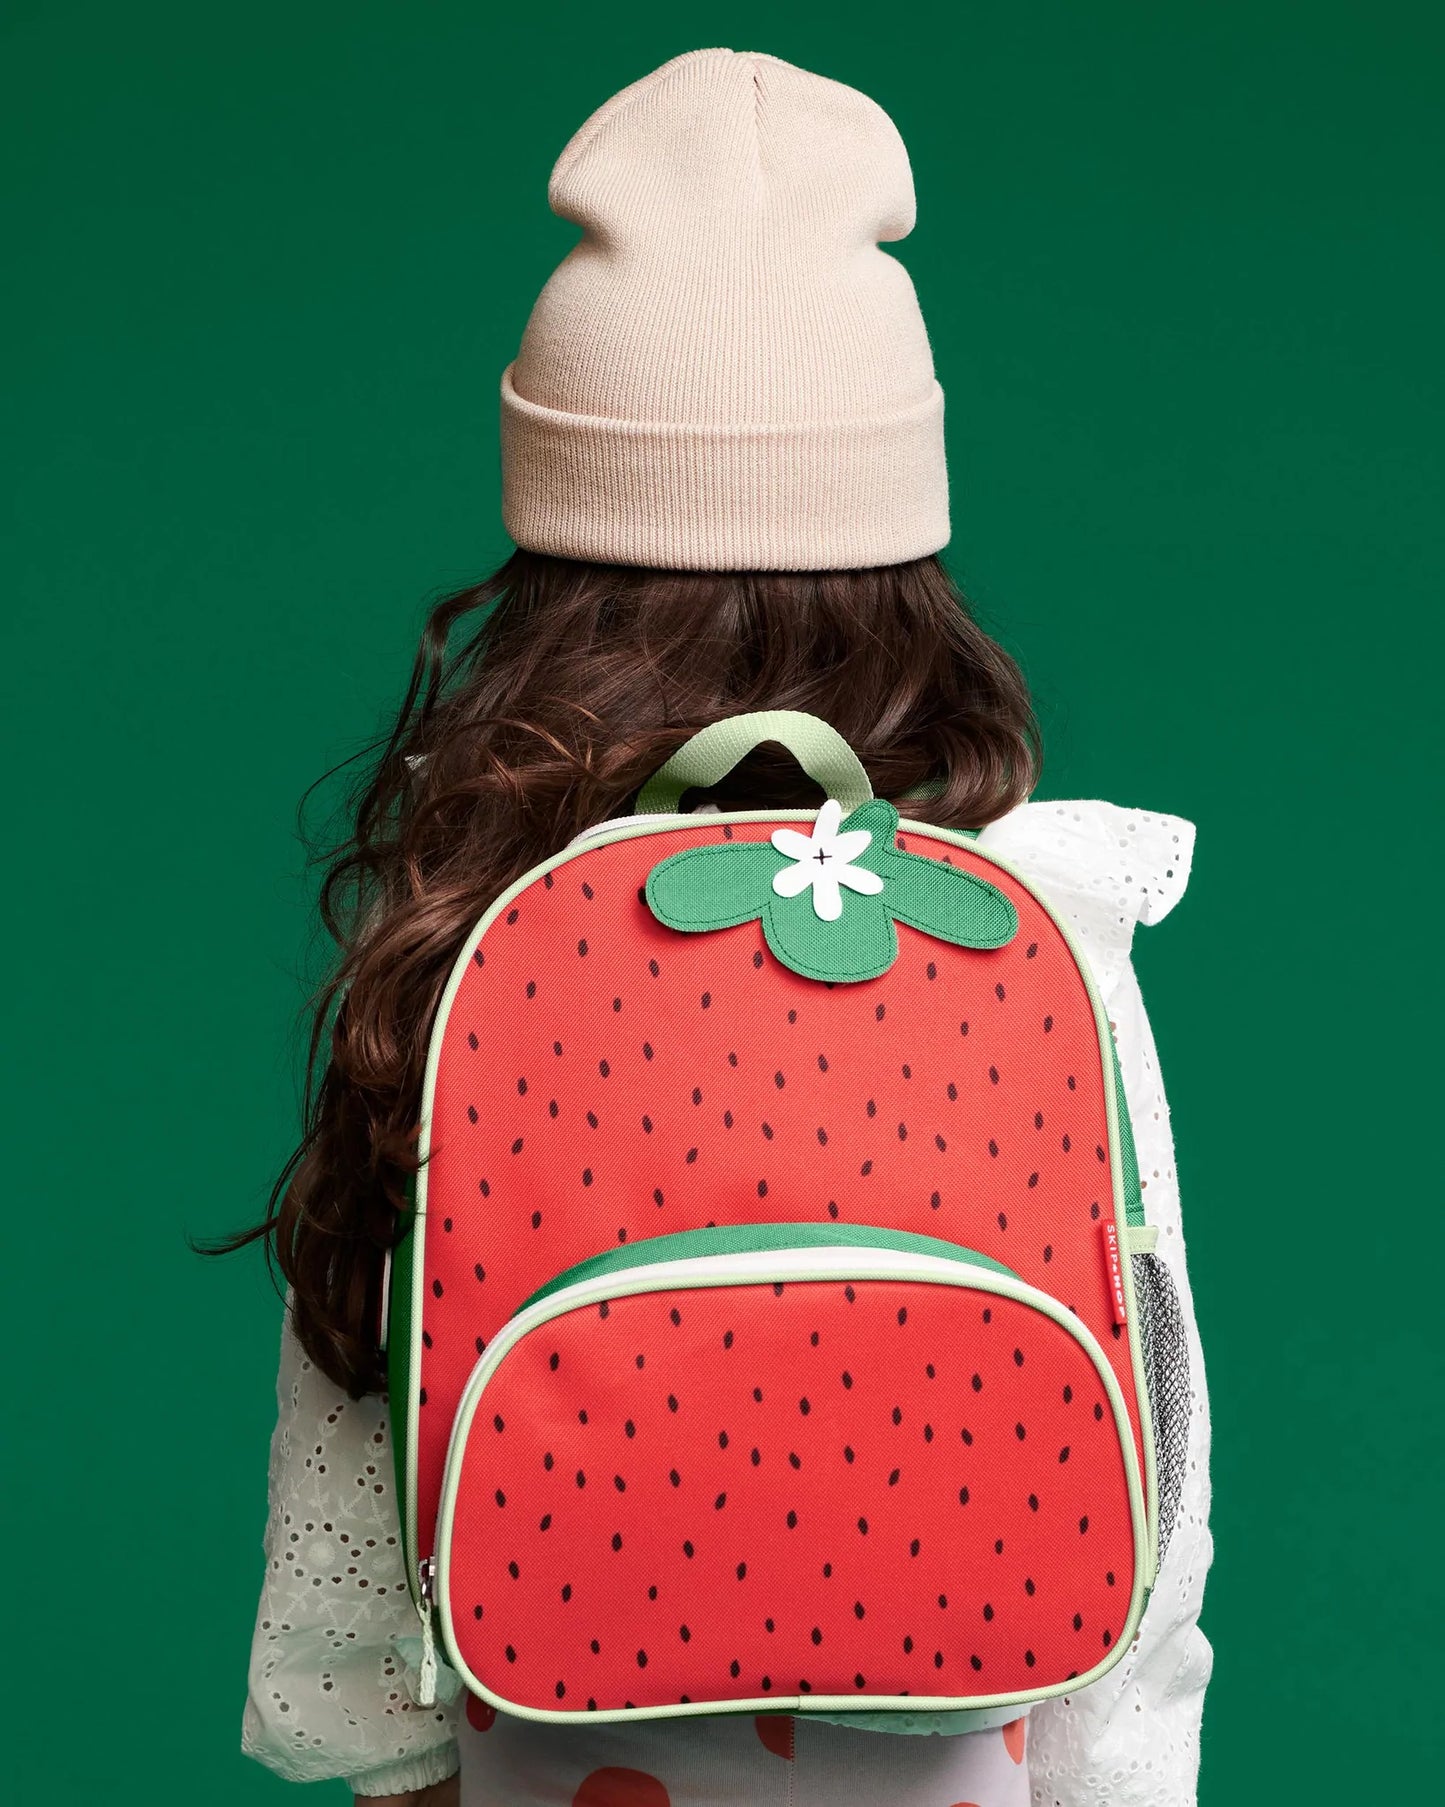 Skip Hop - SPARK STYLE Little Kid Backpack Strawberry - BambiniJO | Buy Online | Jordan